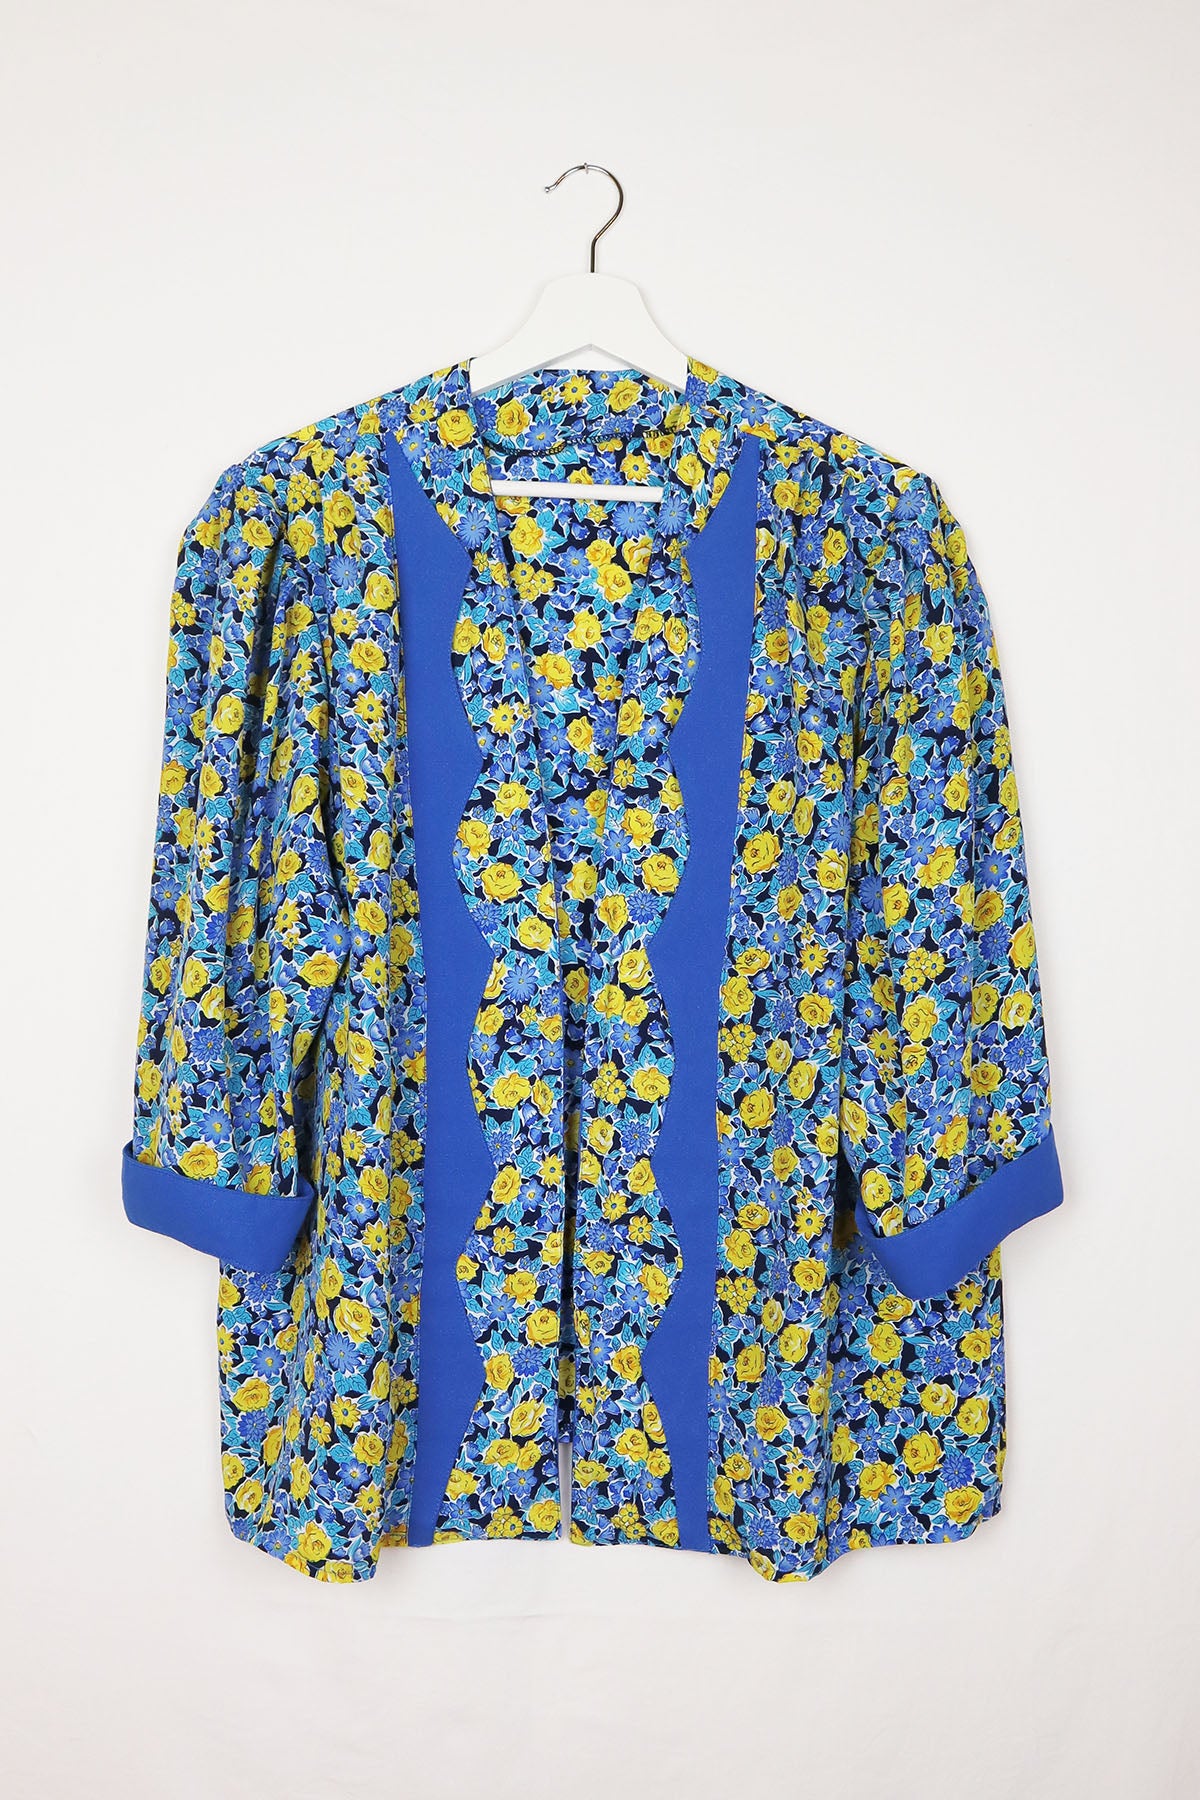 Bluse Vintage in Cardigan Optik ( Gr. M/L)